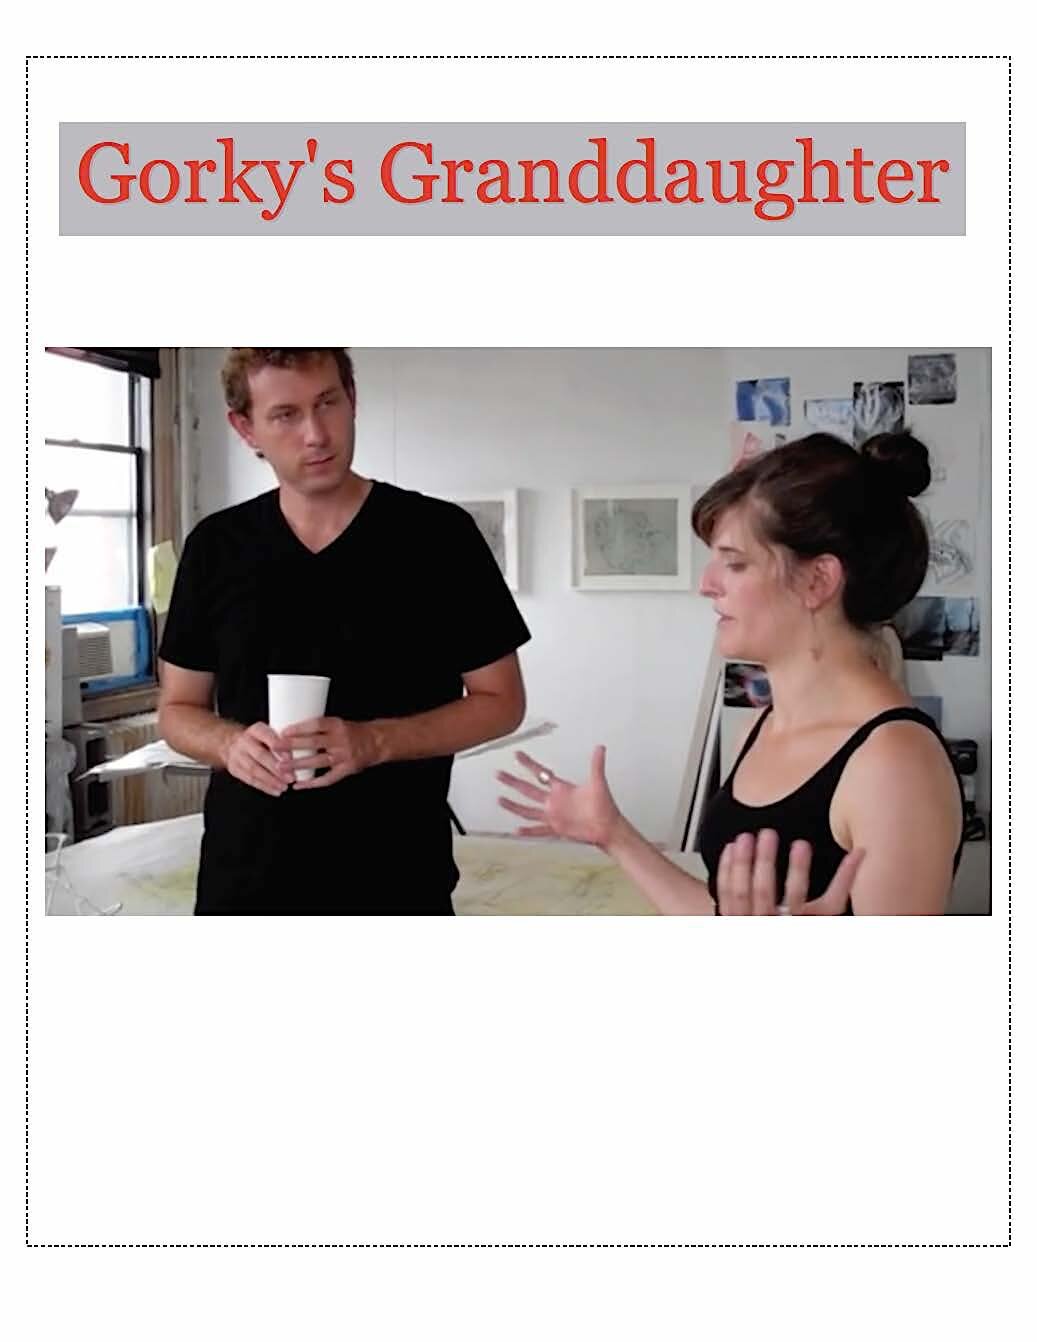 GORKY'S GRANDDAUGHTER.jpg